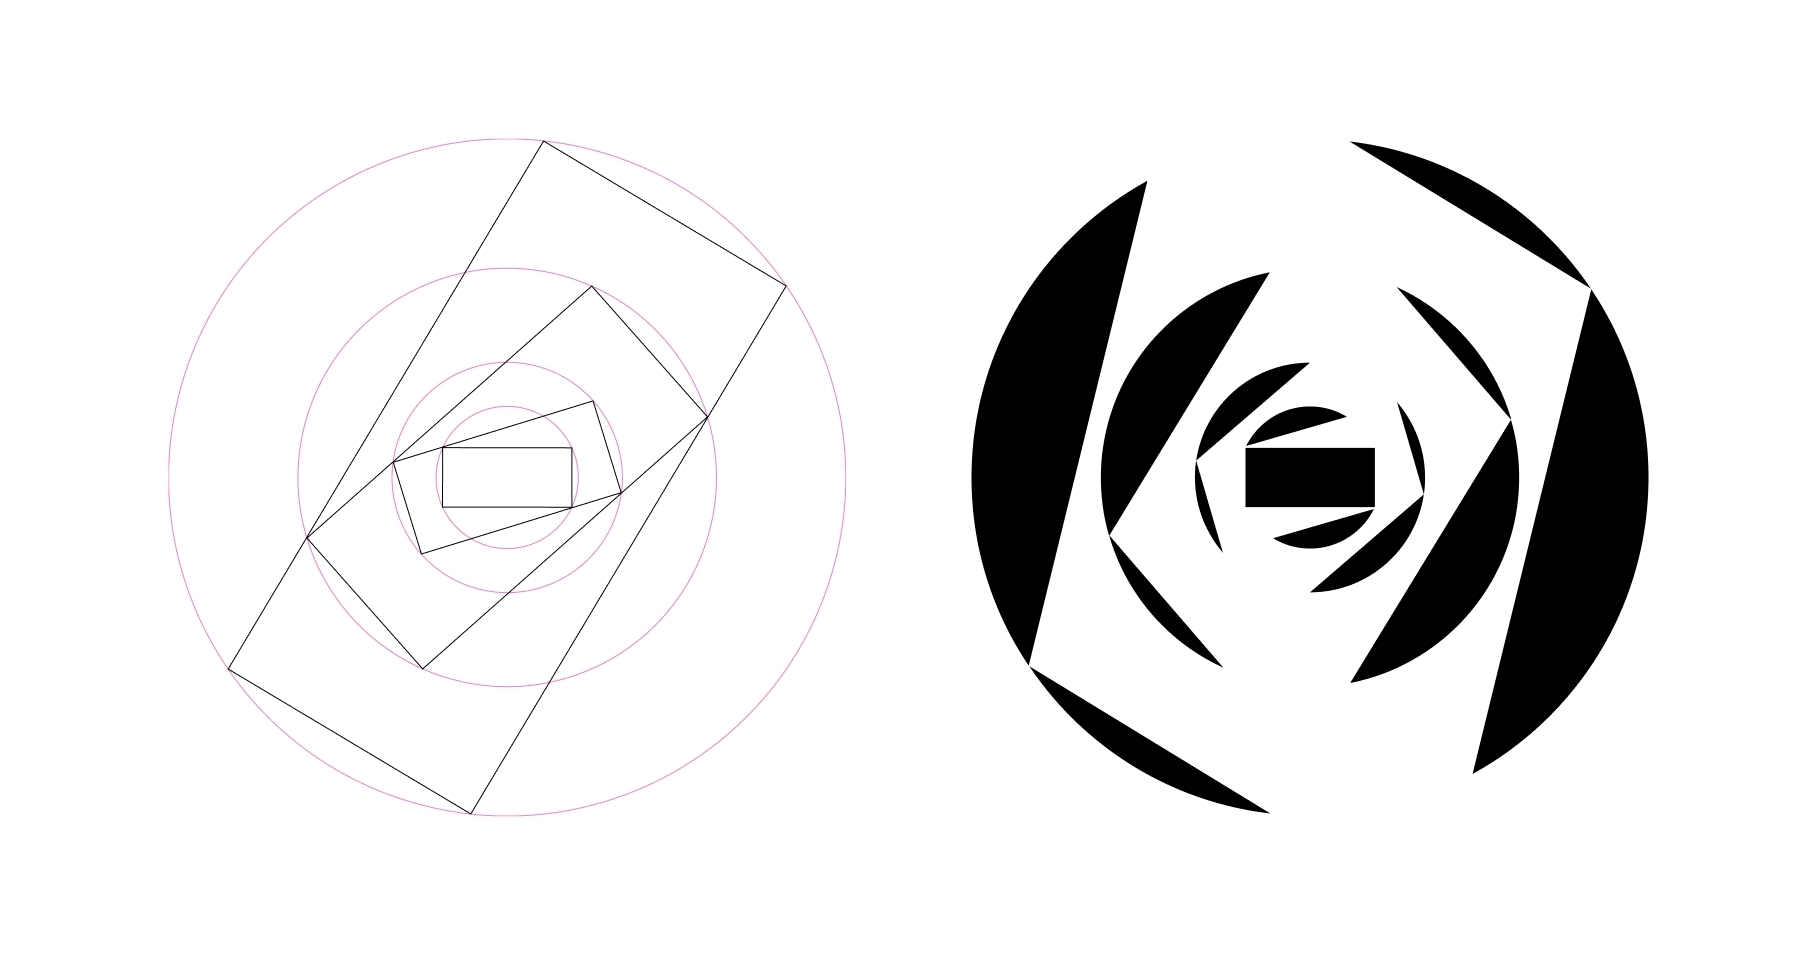 Logokonstruktion für den Kinokulturpreis. Branddesign